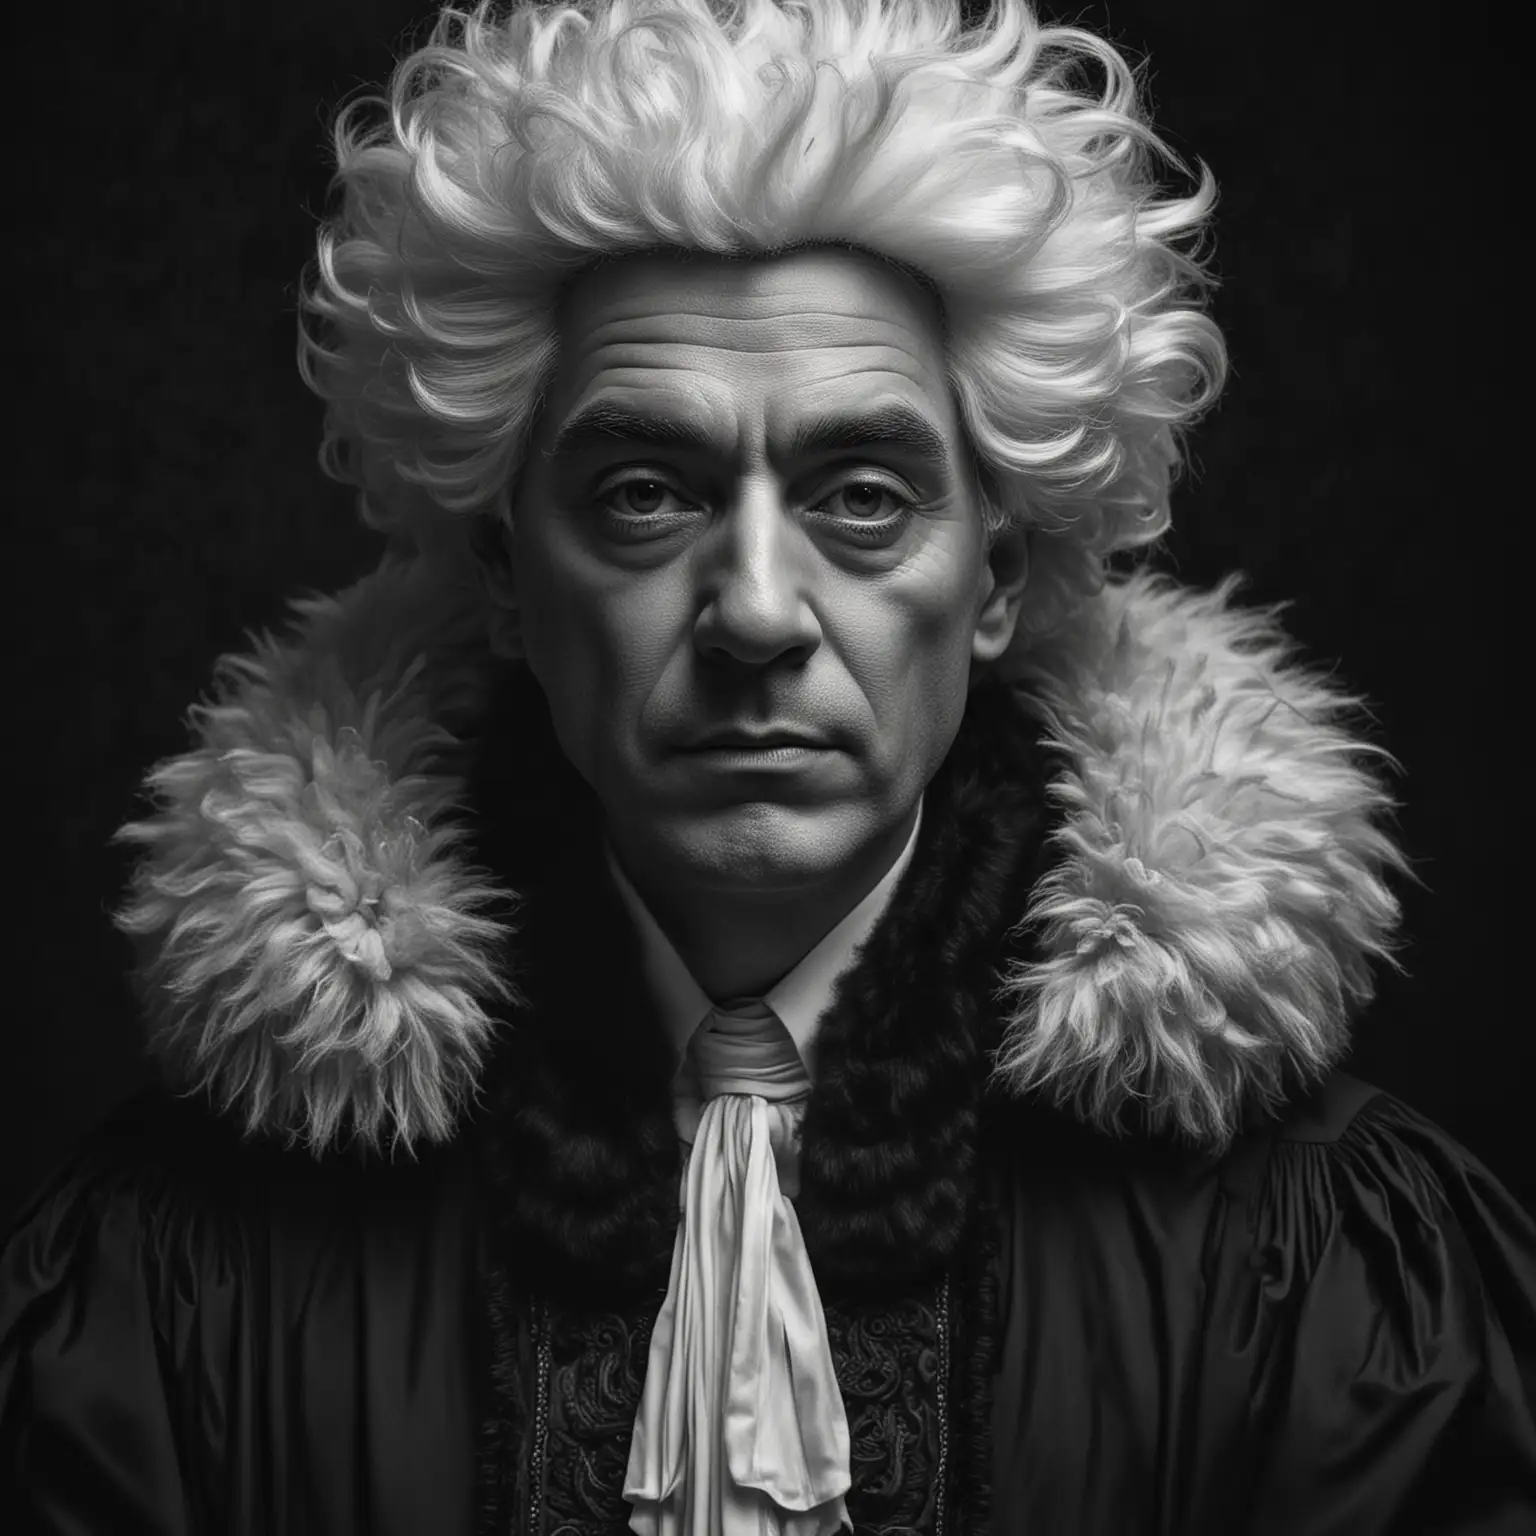 Judicial Judge Portrait in Dramatic Monochrome